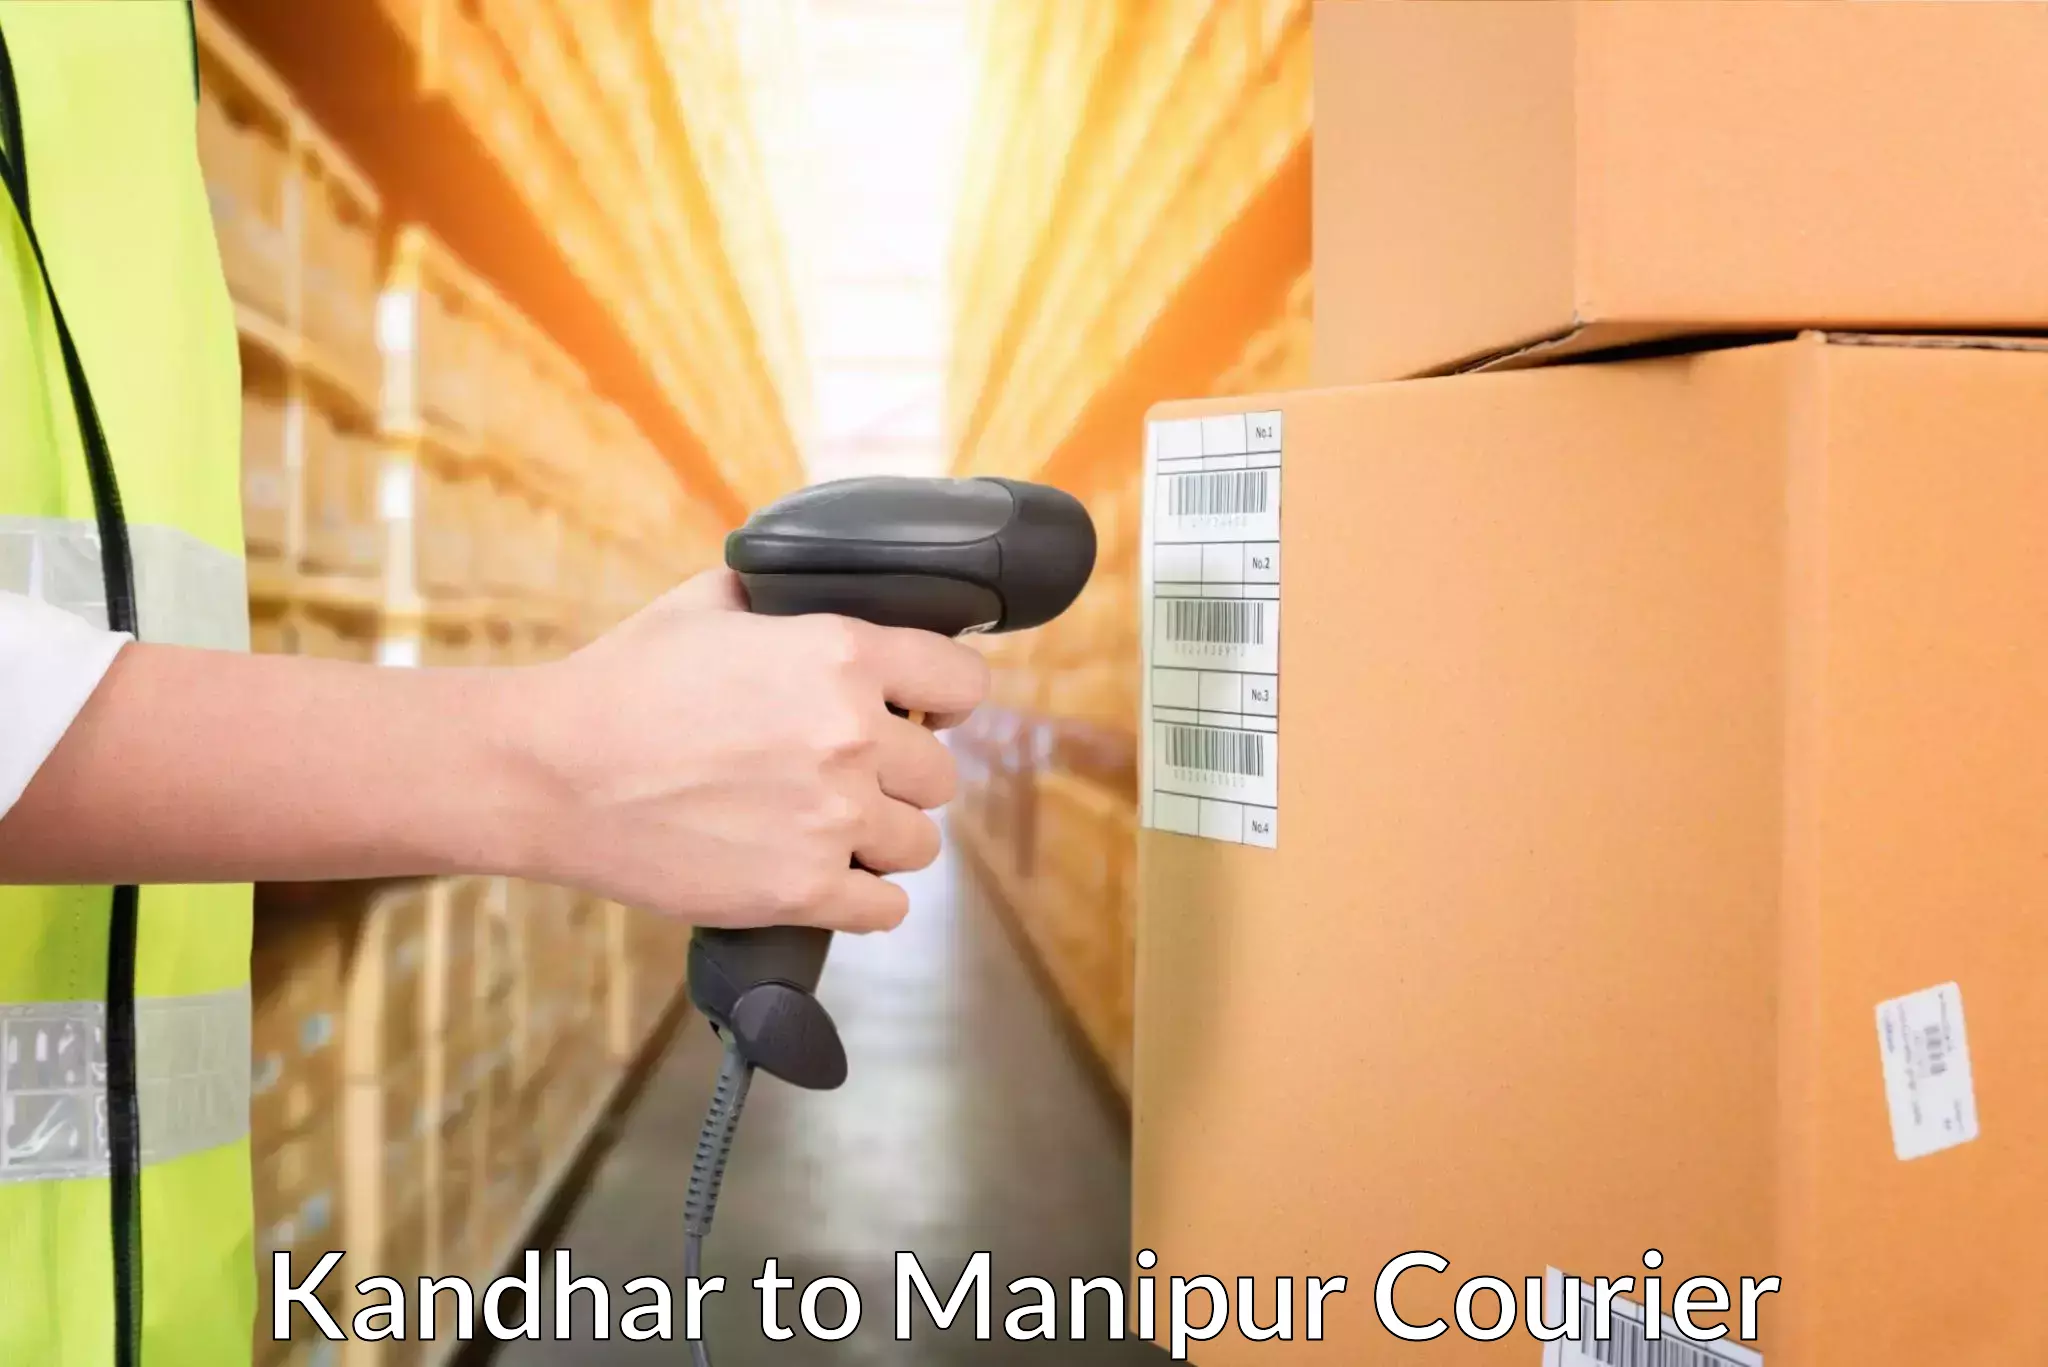 Cash on delivery service Kandhar to Churachandpur